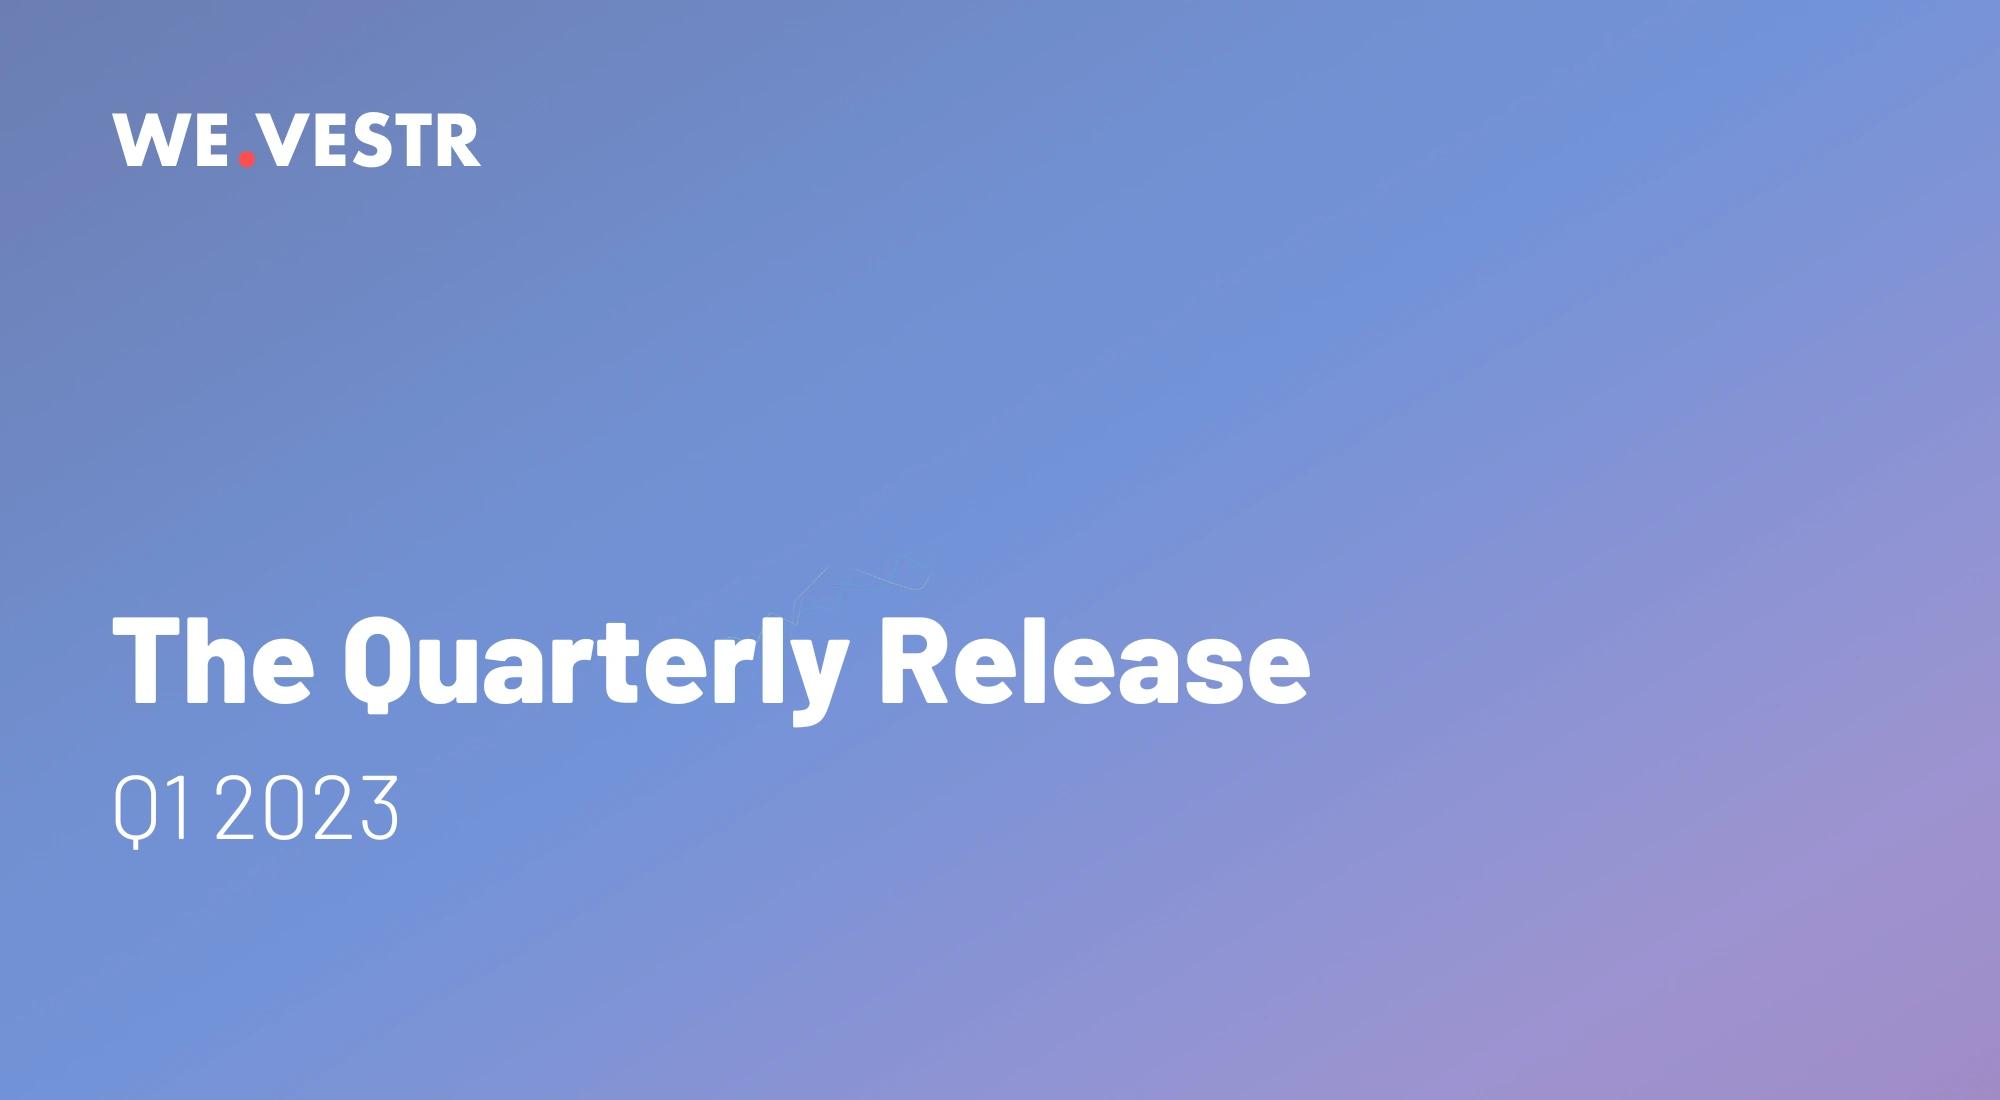 Quarterly Release | Q1 '23